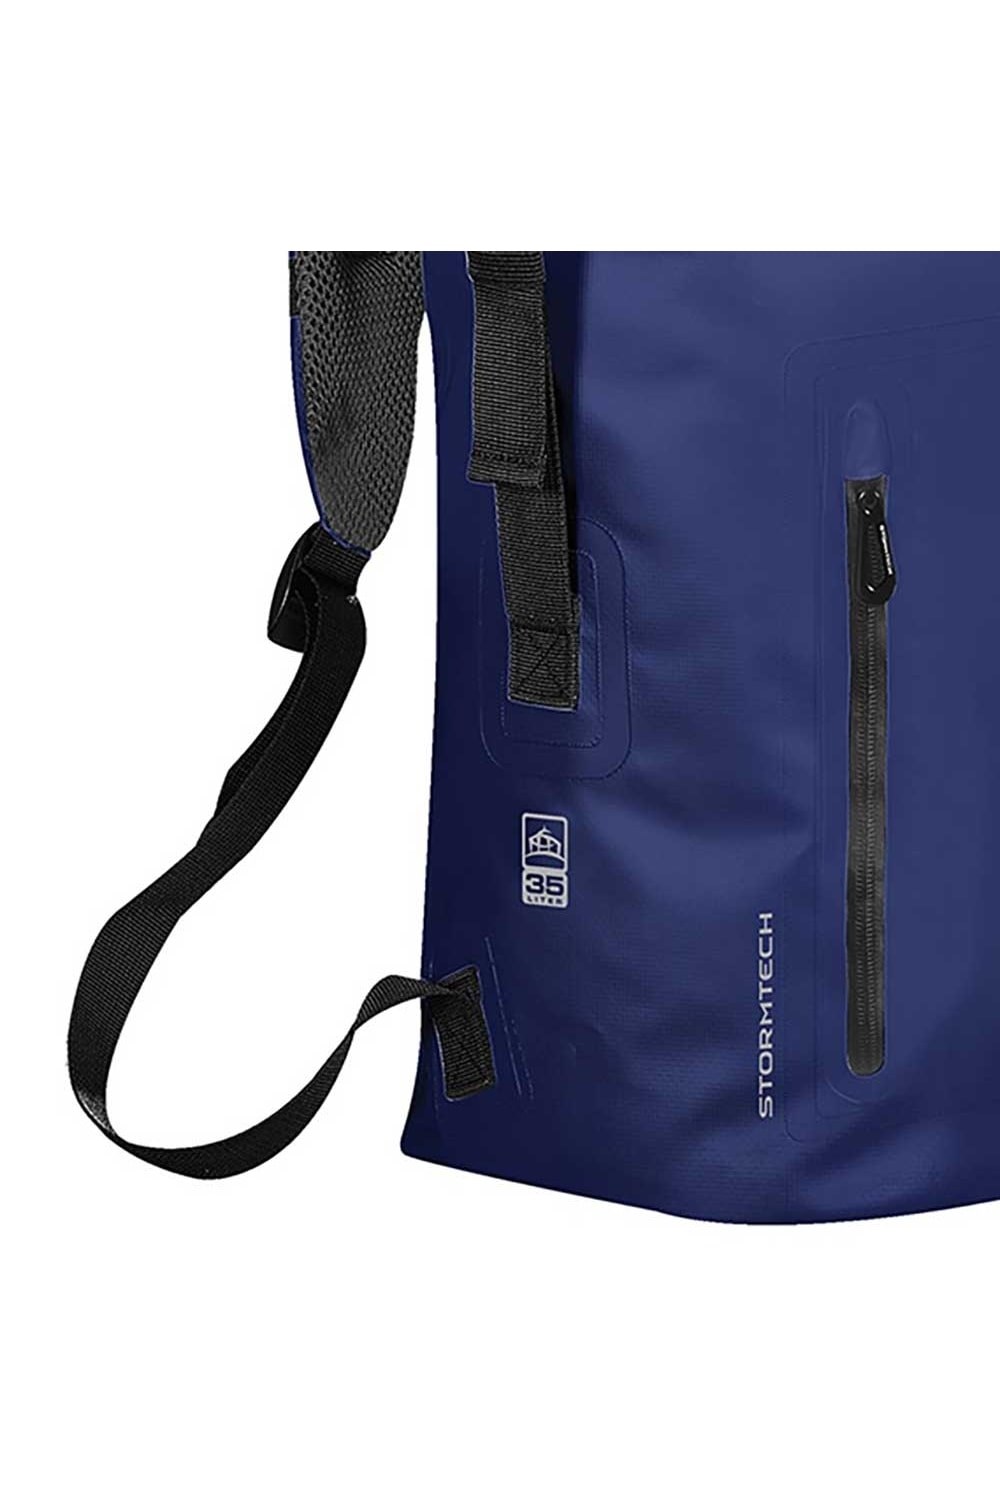 Cascade 35L Waterproof Backpack